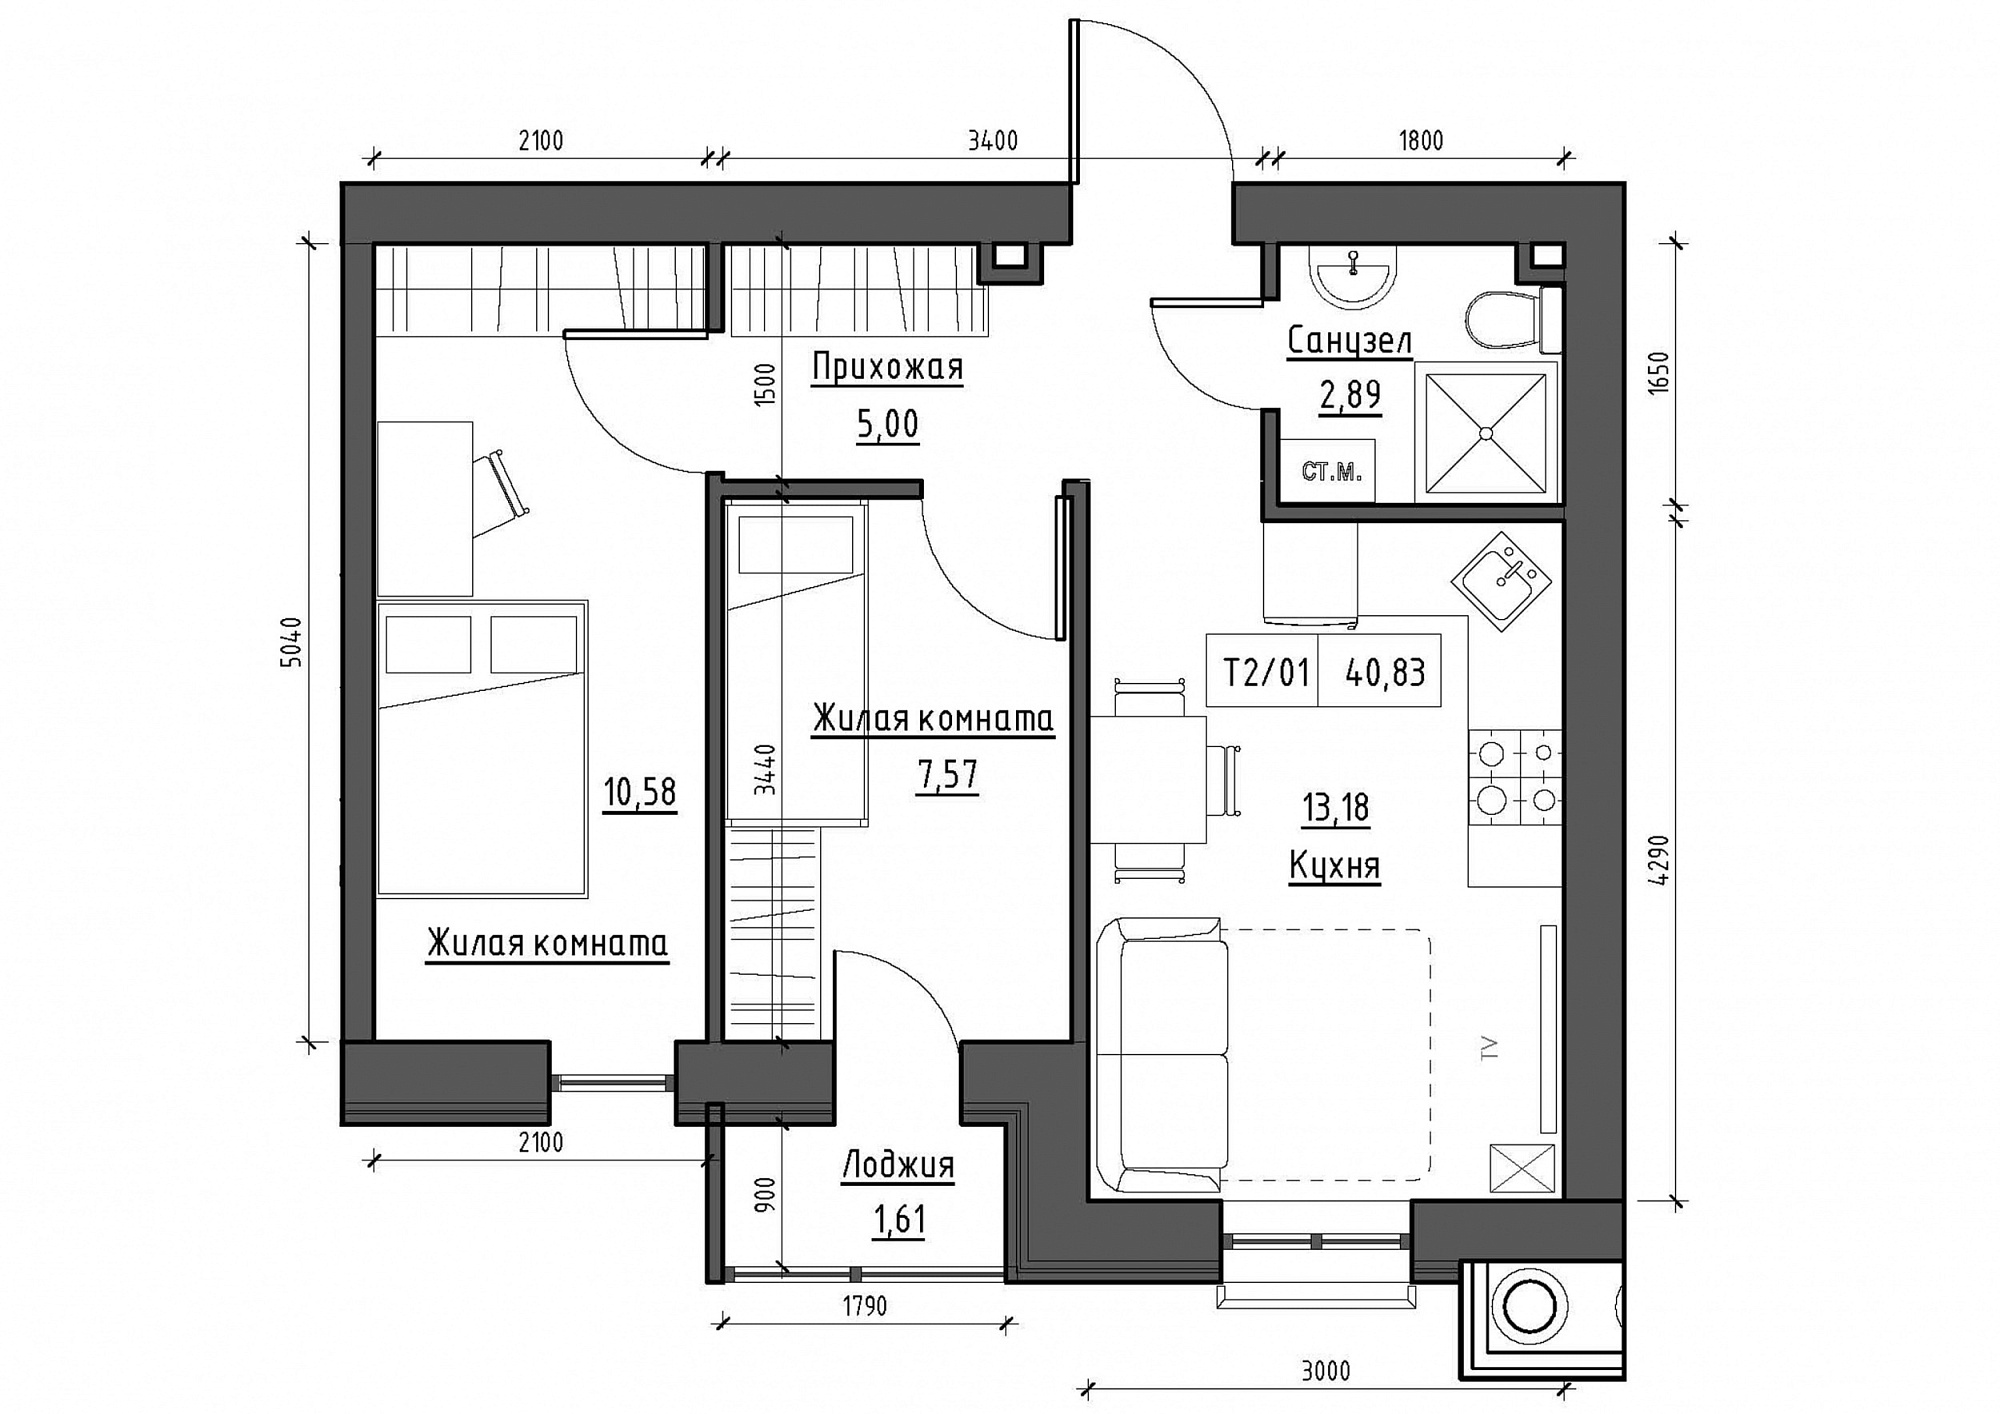 Планировка 2-к квартира площей 40.83м2, KS-011-01/0011.